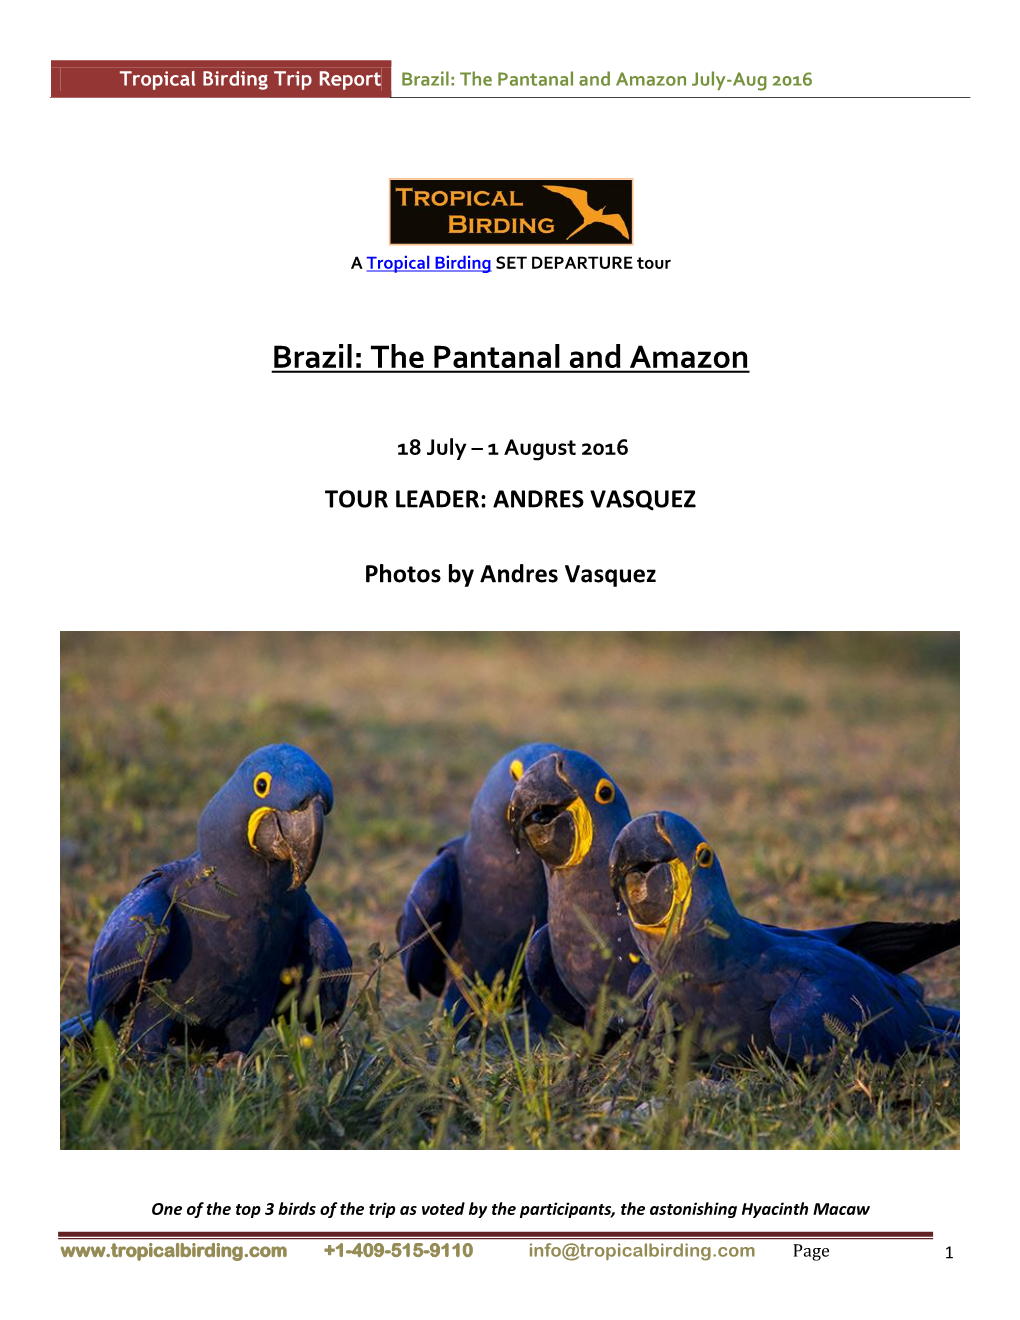 Brazil: the Pantanal and Amazon July-Aug 2016